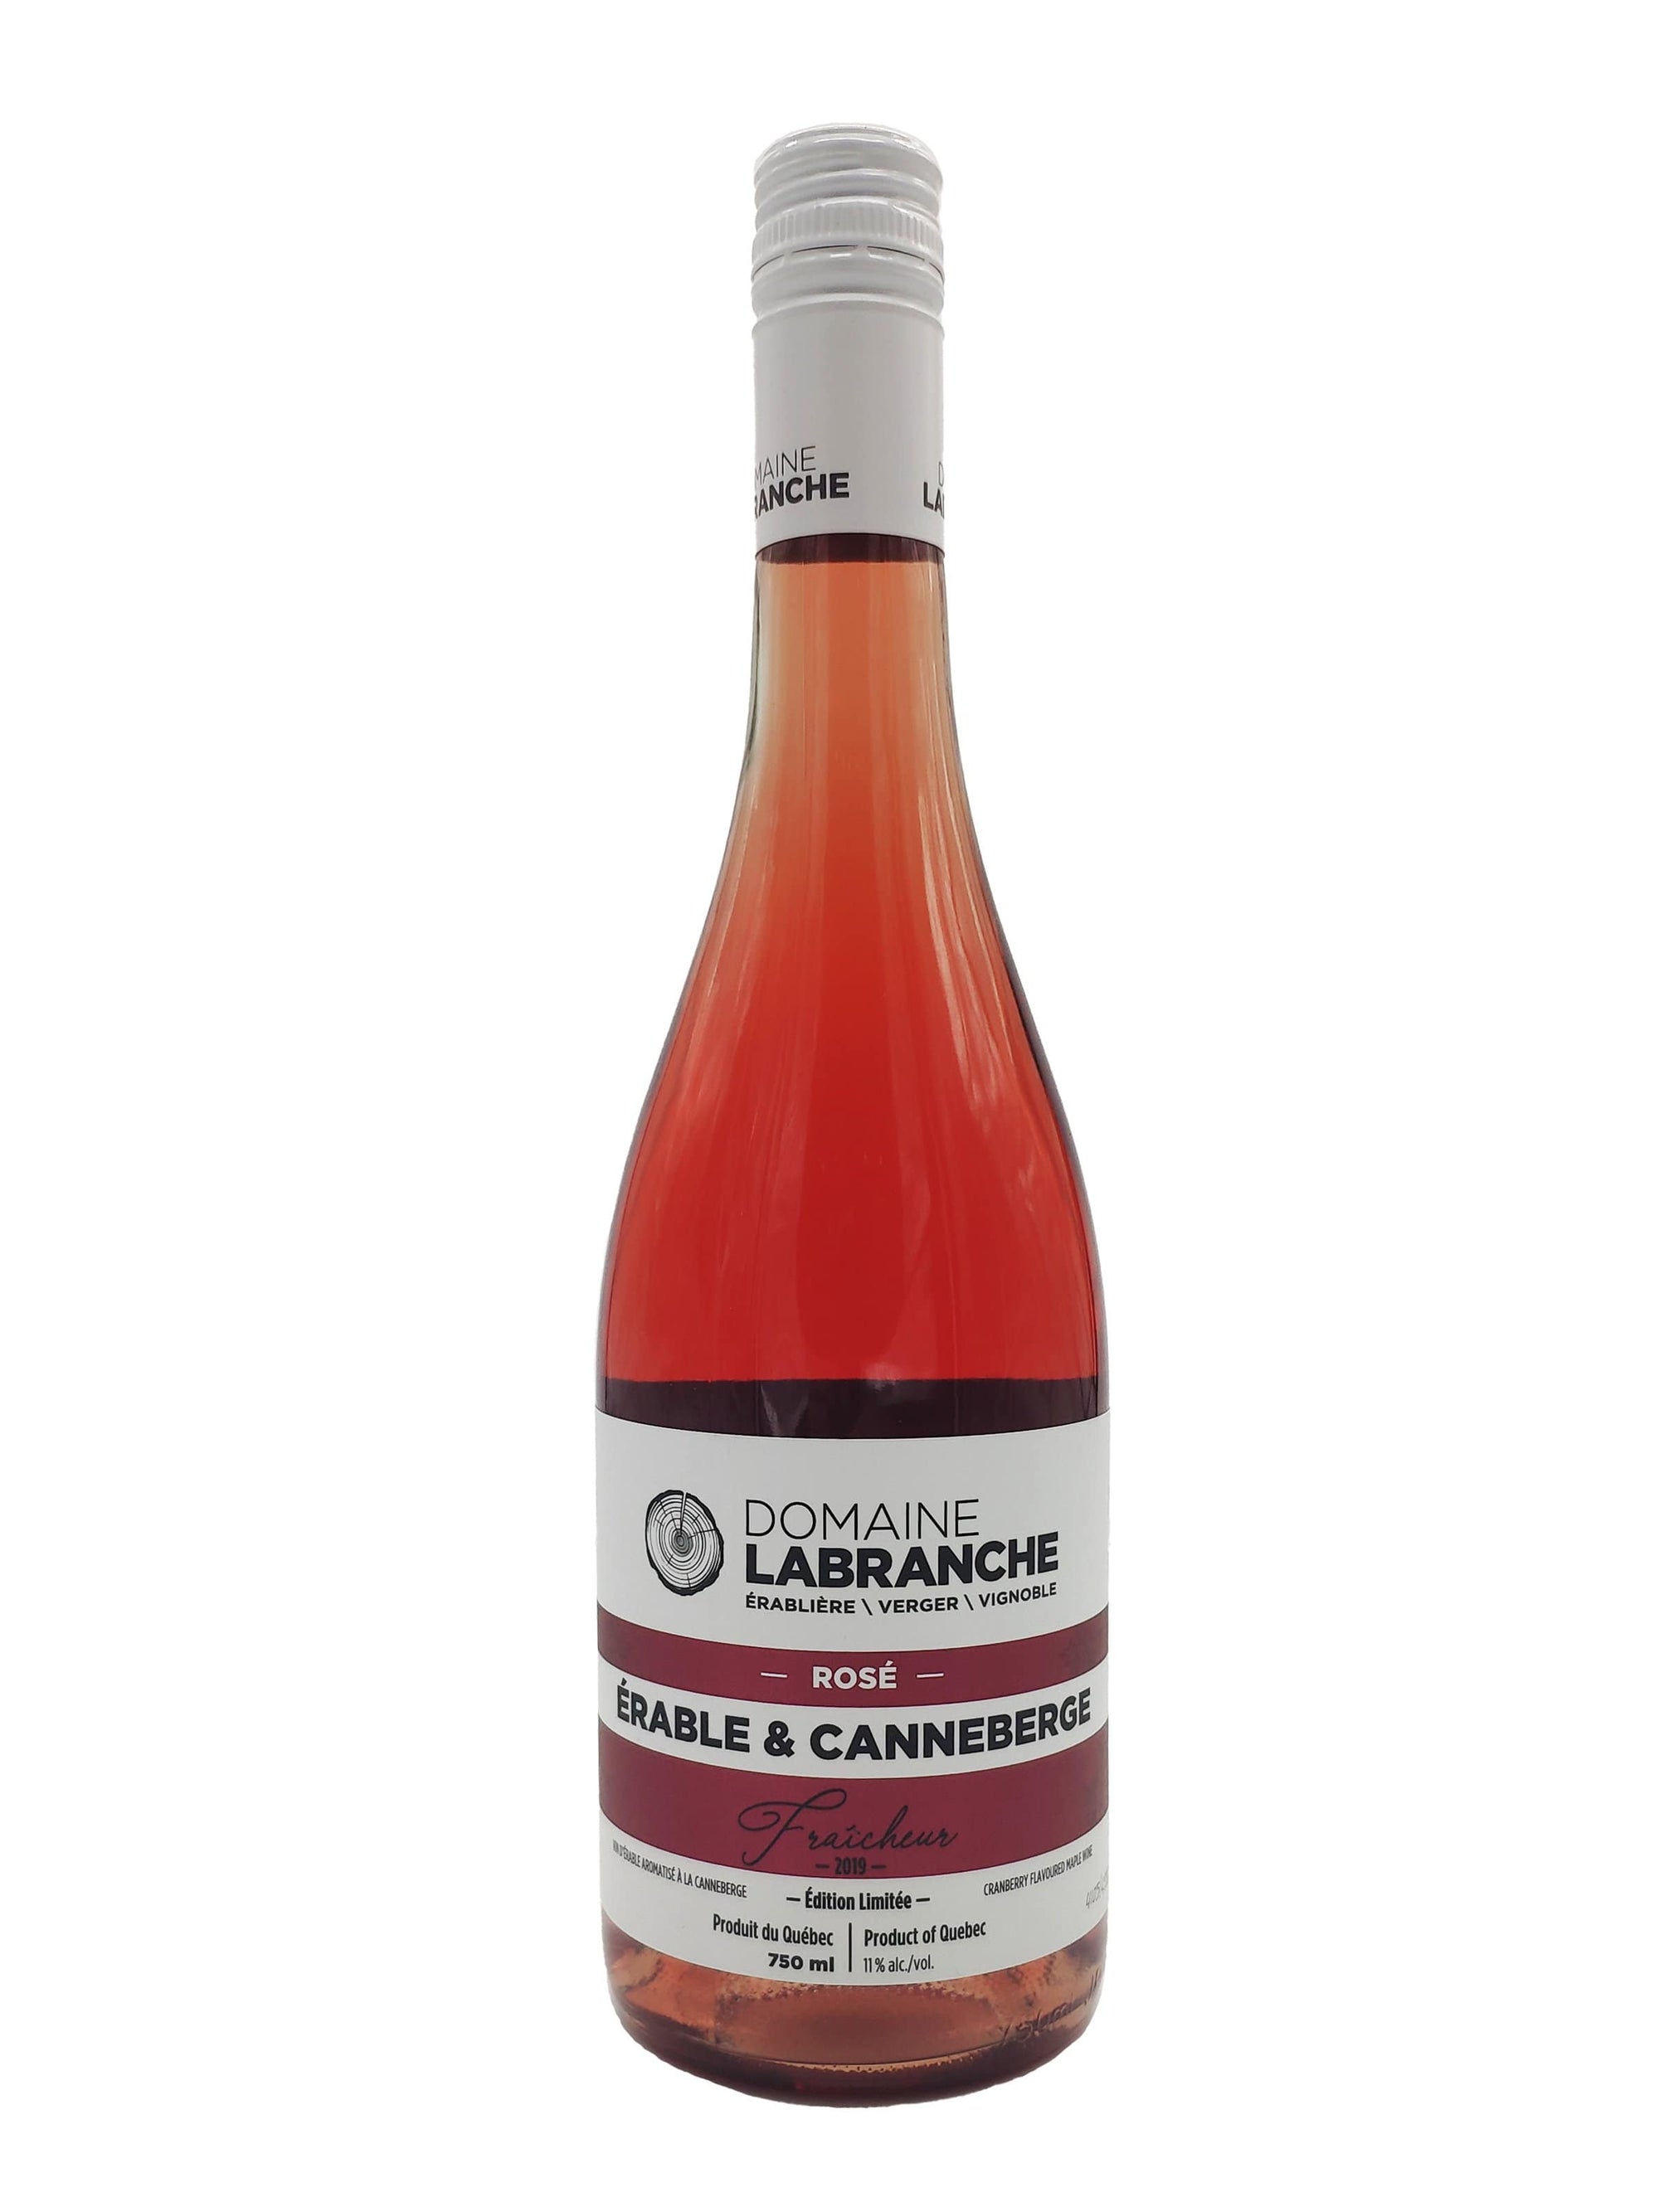 Rosé érable et canneberges - Vin rosé du Domaine Labranche